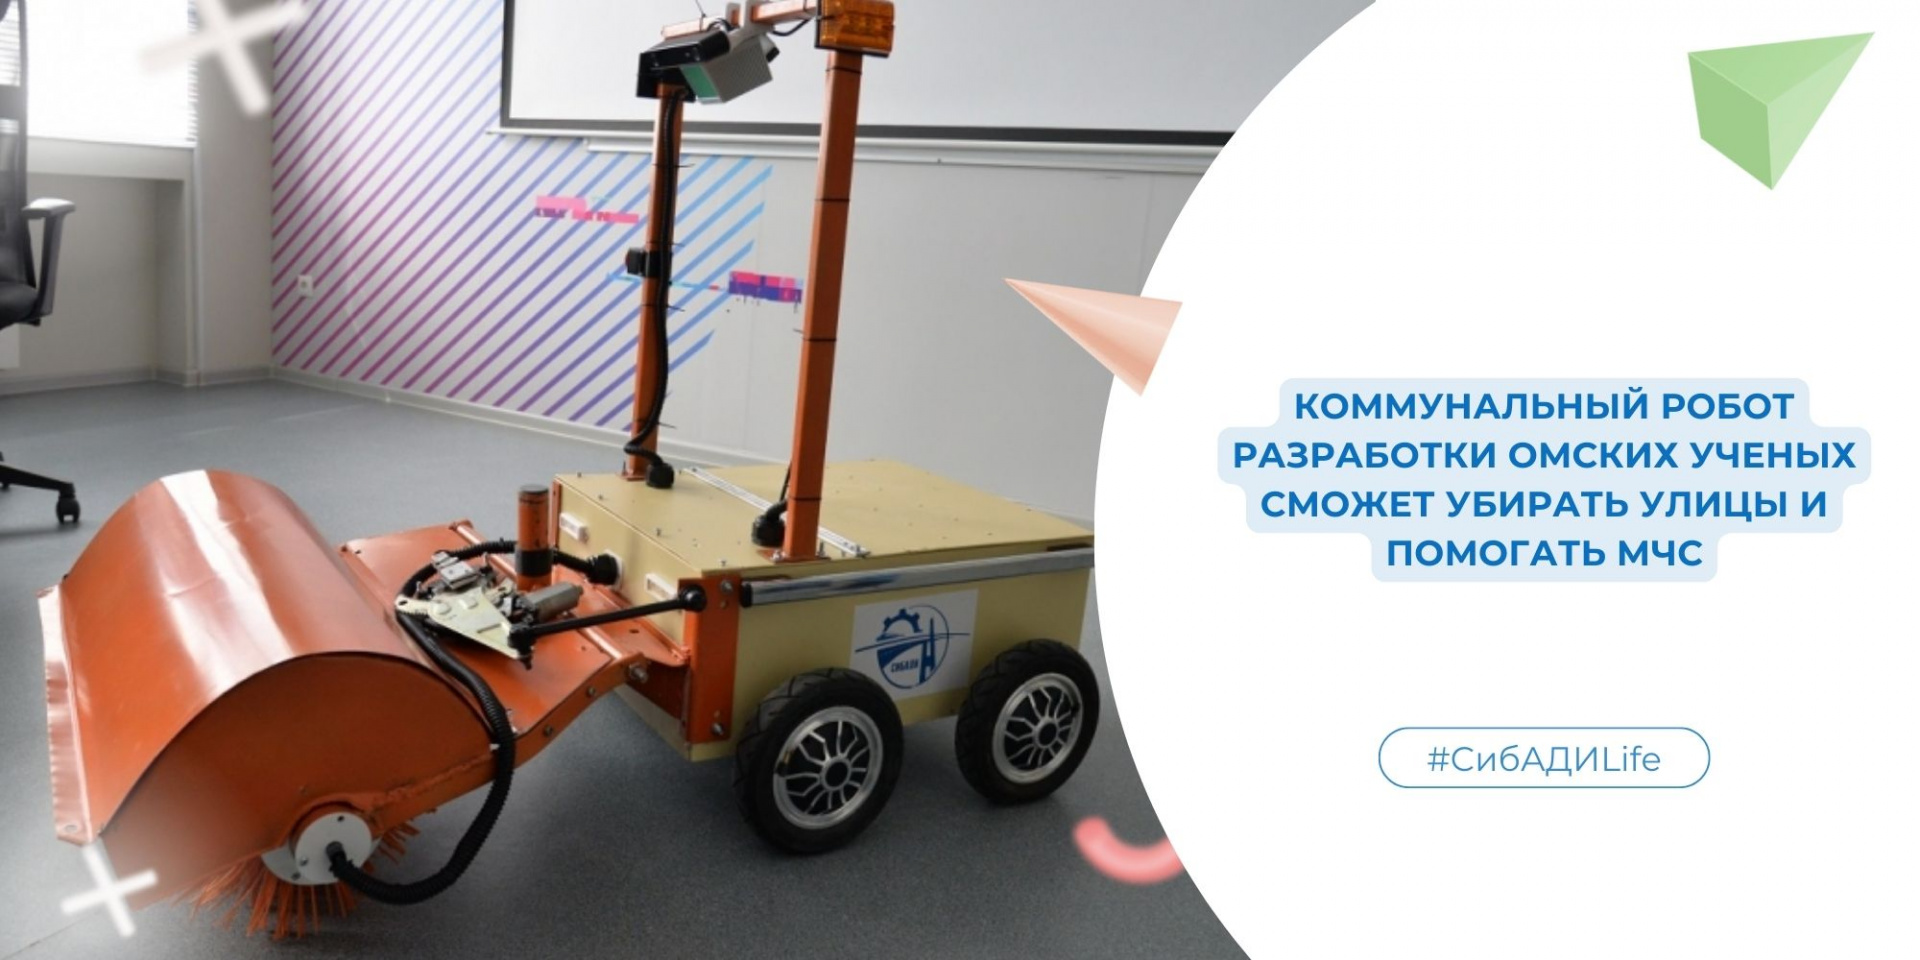 Коммунальный робот. Разработка омских ученых сможет убирать улицы и помогать МЧС